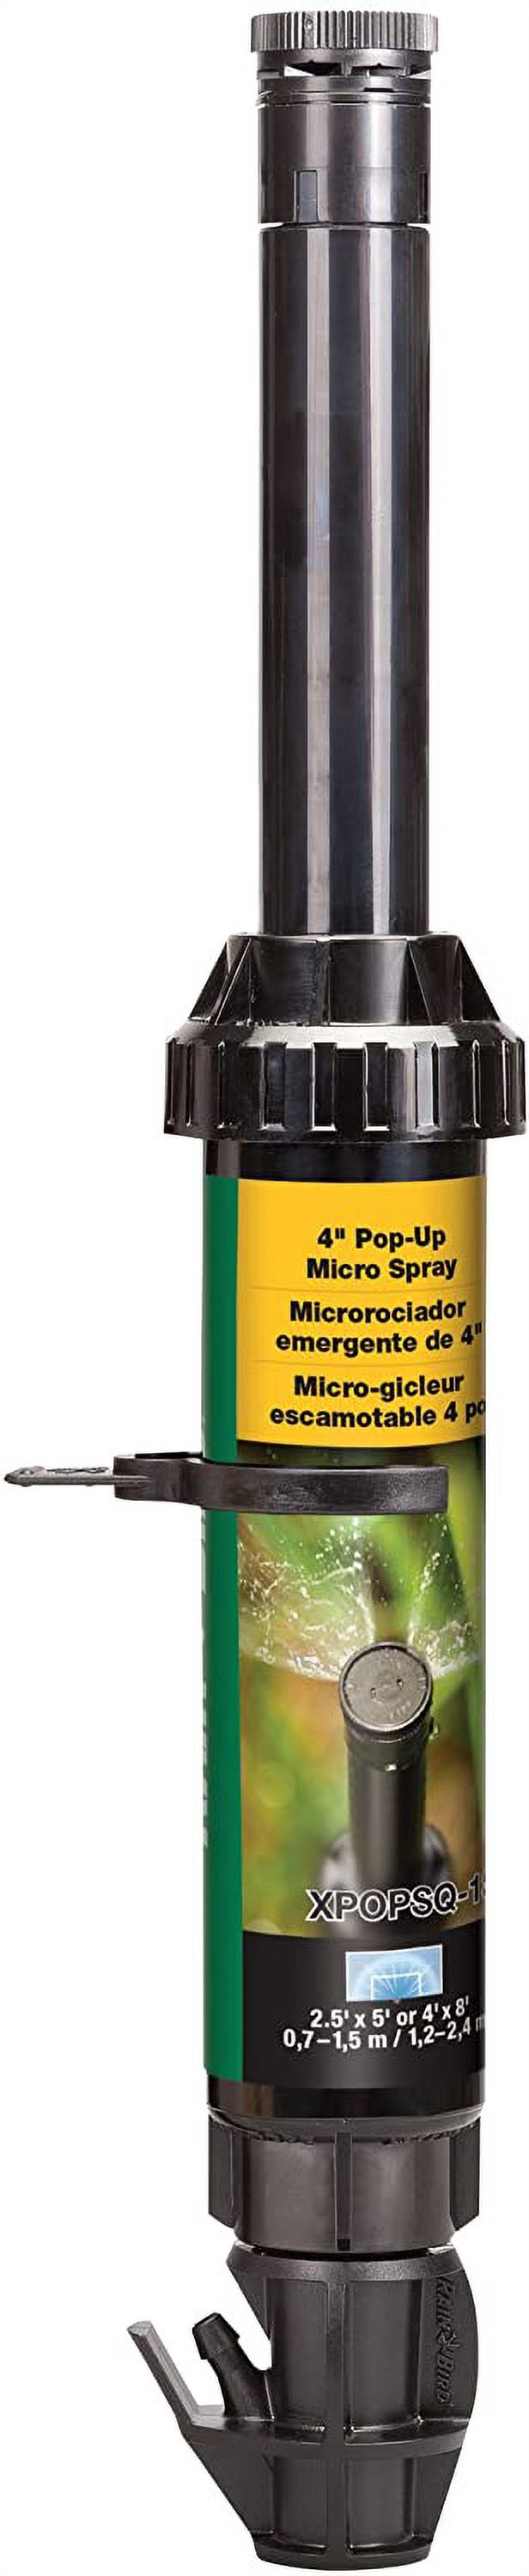 rain bird micro-spray pop-up - image 2 of 8